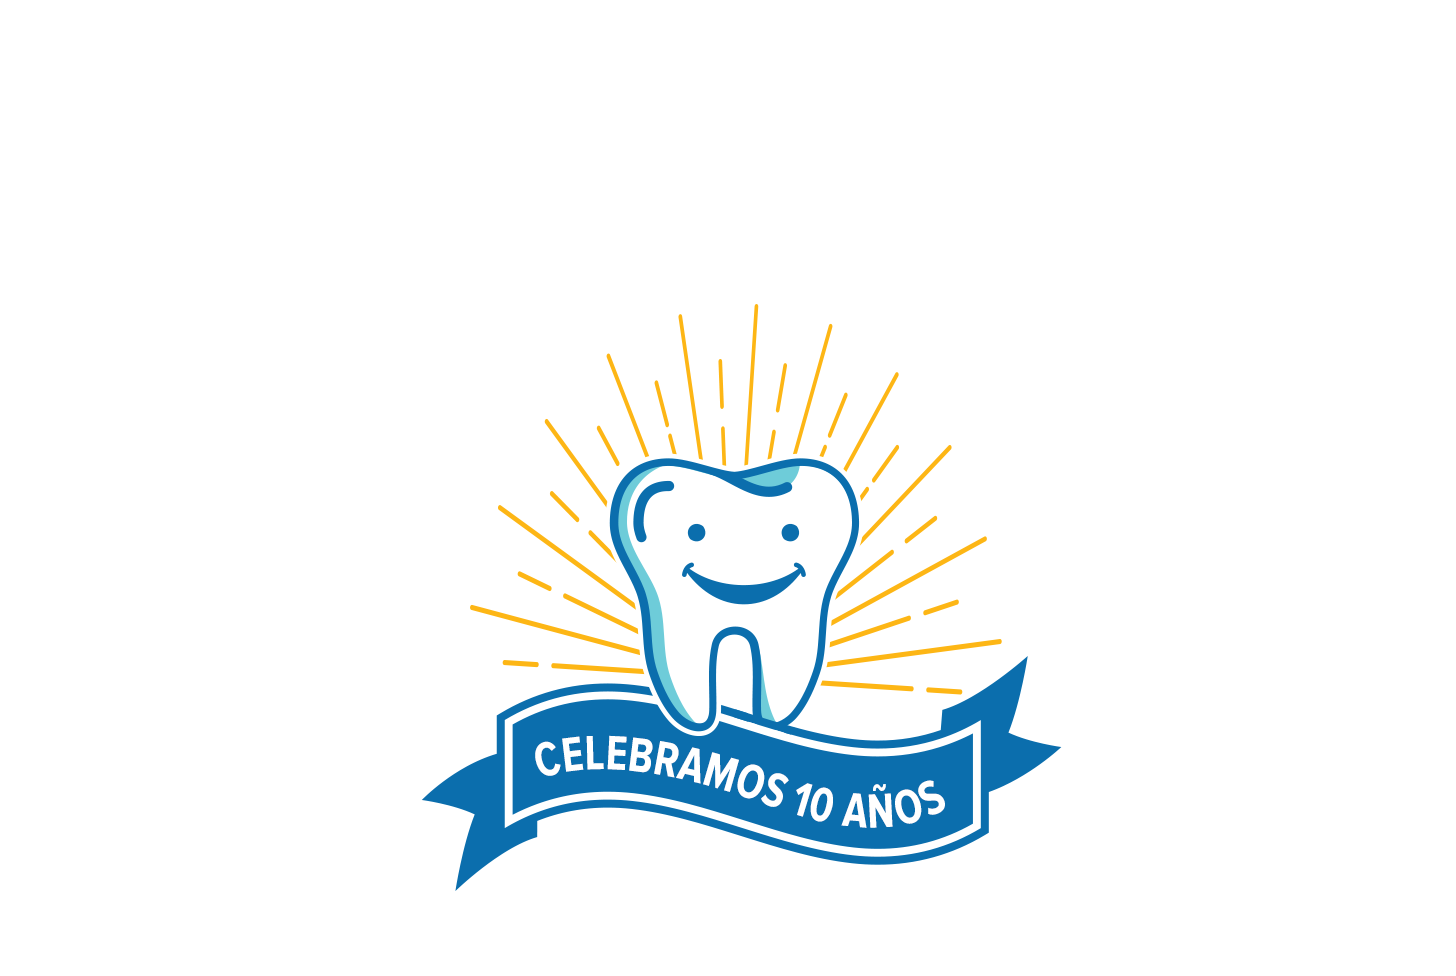 Imagen gráfica de un diente brillante y sonriente sobre un cartel que dice "Celebramos 10 años"